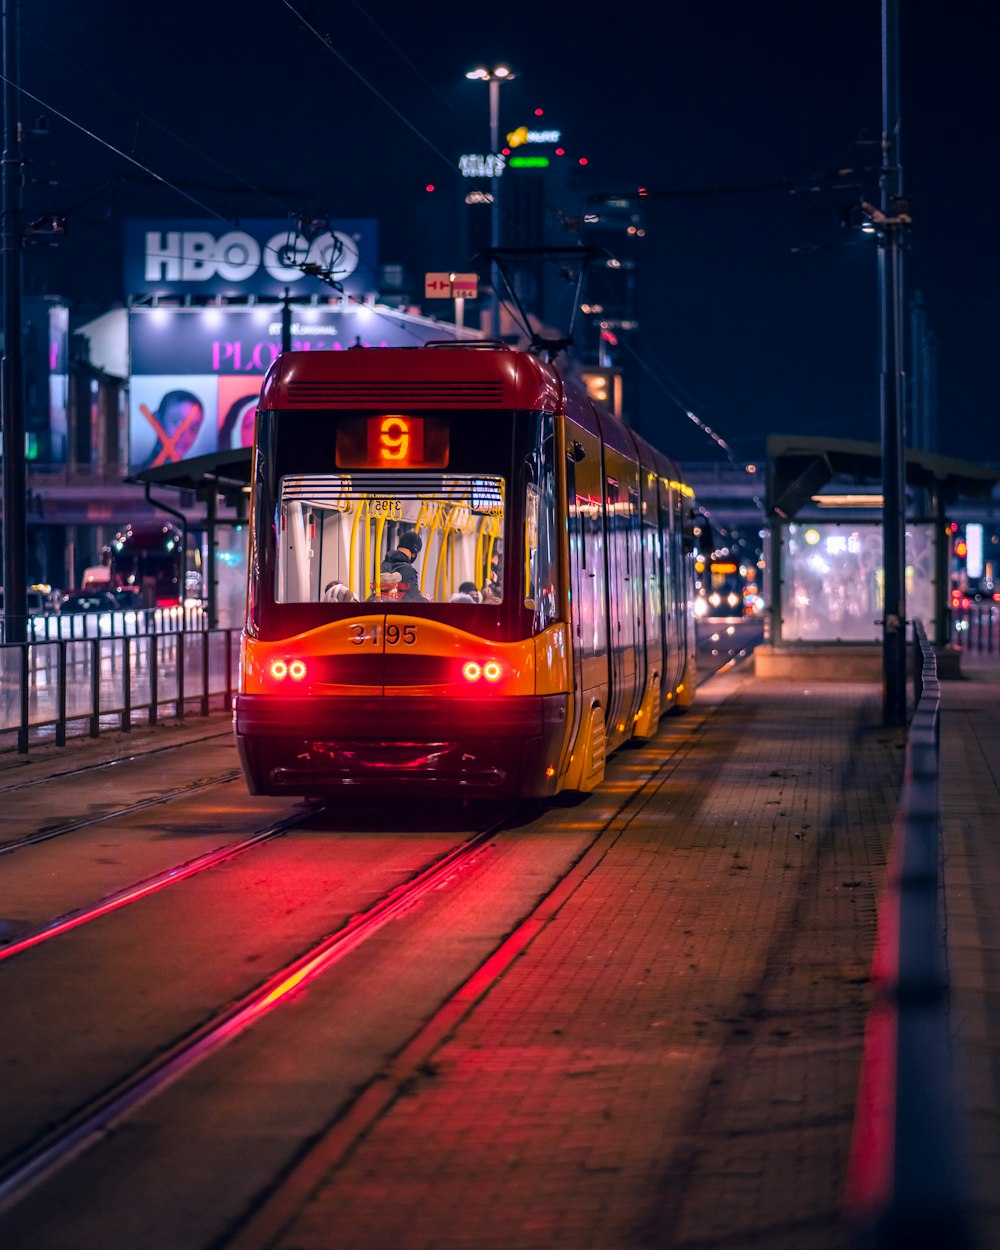 Un train rouge circulant sur les voies ferrées la nuit